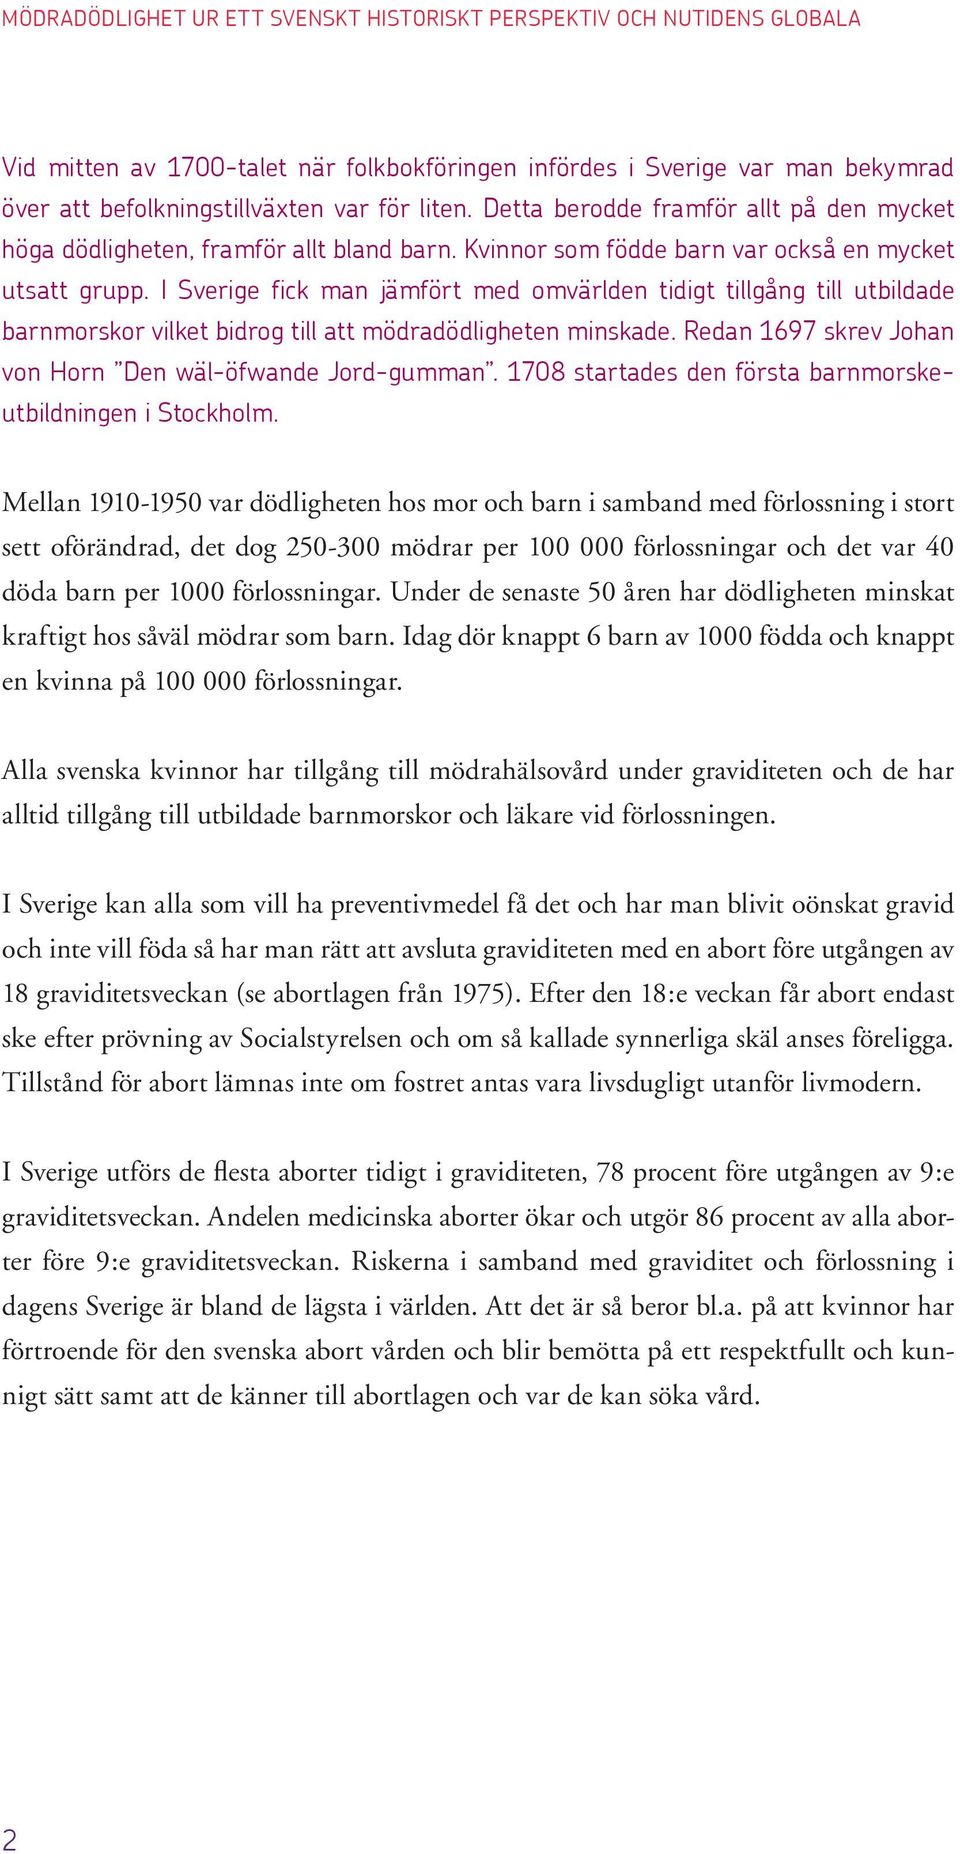 I Sverige fick man jämfört med omvärlden tidigt tillgång till utbildade barnmorskor vilket bidrog till att mödradödligheten minskade. Redan 1697 skrev Johan von Horn Den wäl-öfwande Jord-gumman.